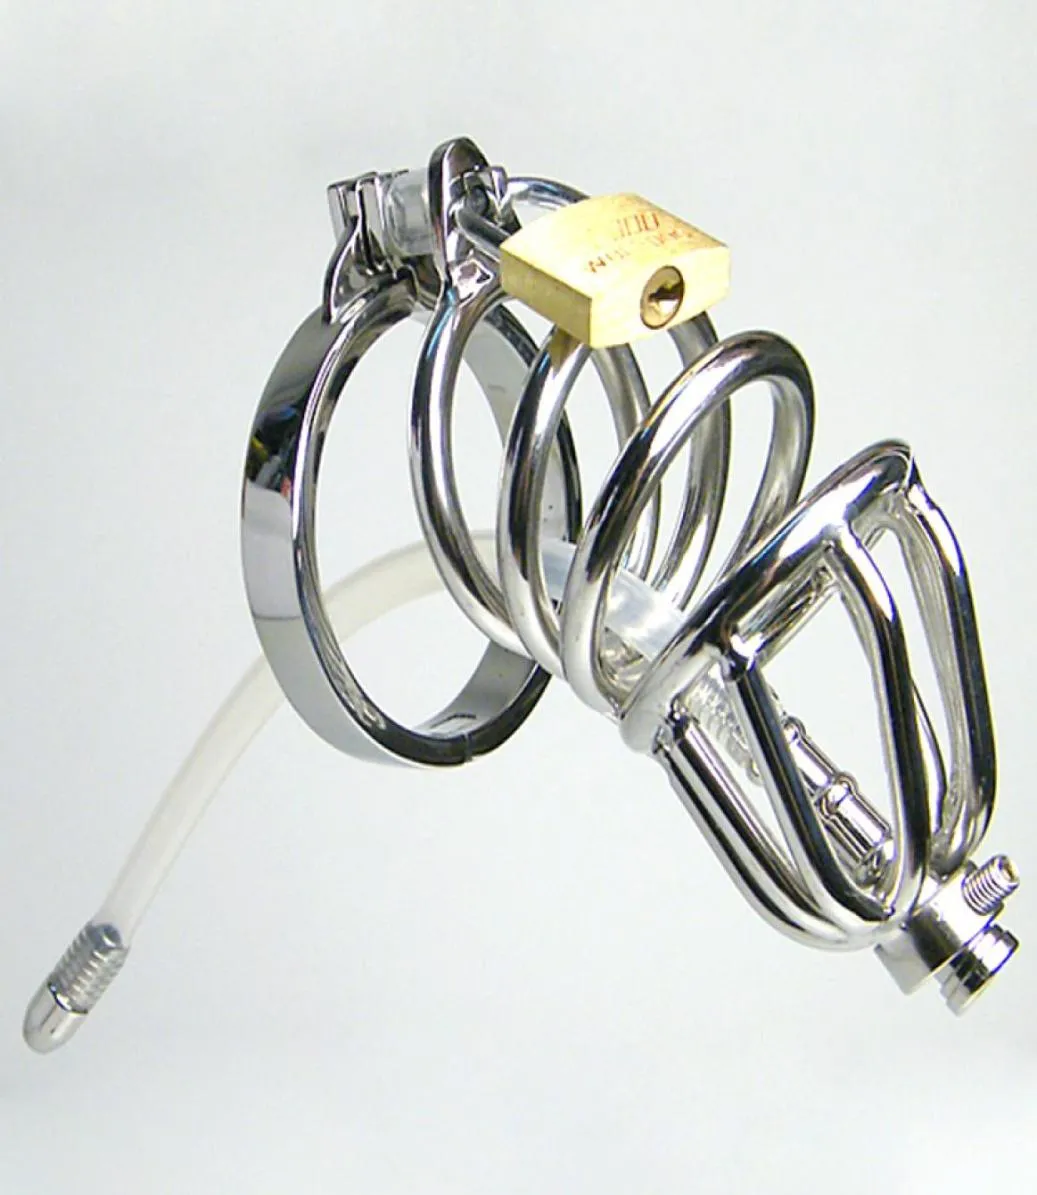 Dispositifs urétraux Bouchons de pénis de ceinture mâle Catheter urétral anneaux de bite cage urétrale BDSM BDSM COCK POUR MAN3825516